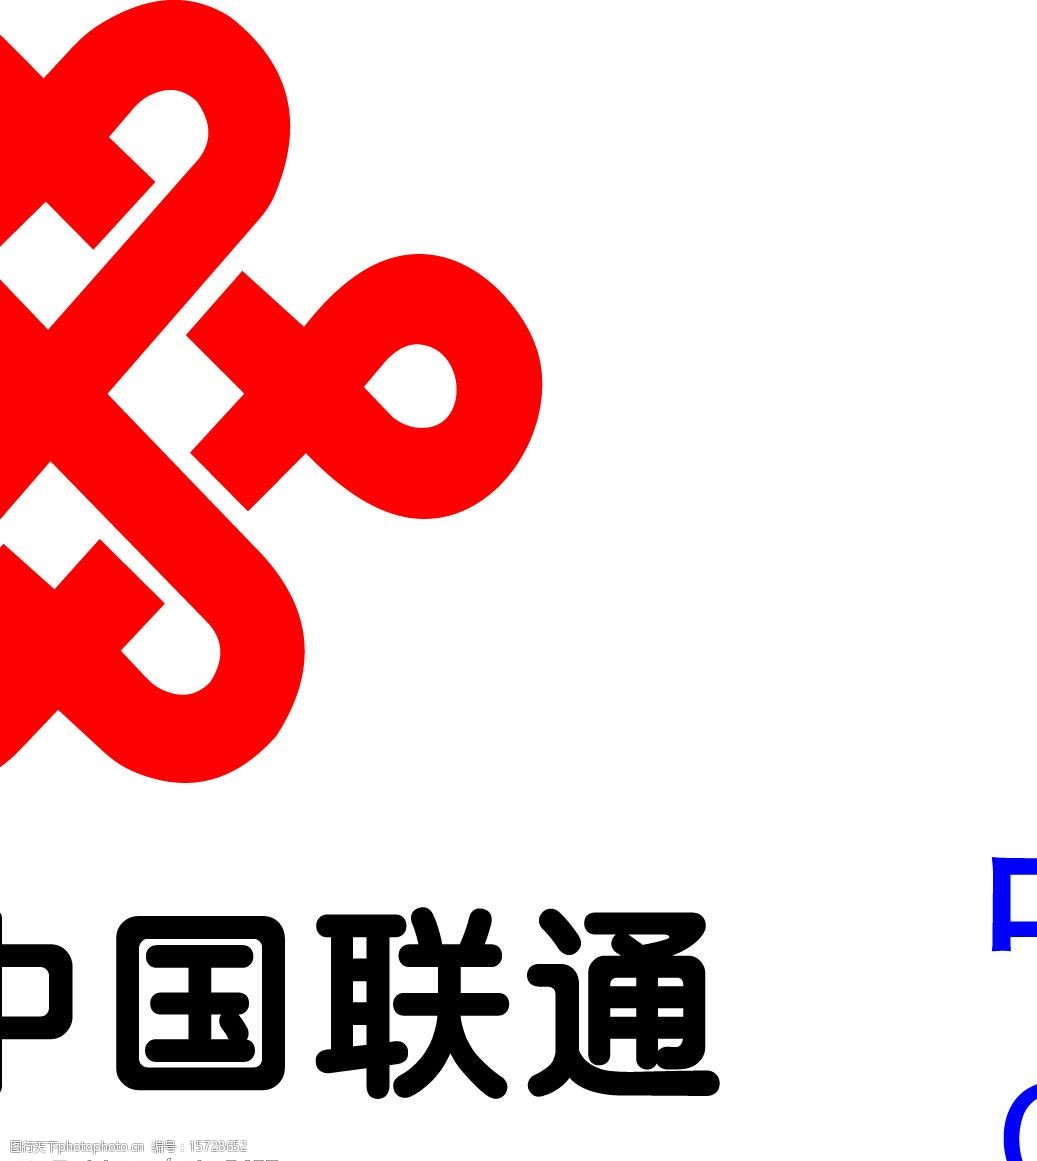 关键词:中国联通标志 铁通 联通标志 其他矢量 矢量素材 矢量花 矢量